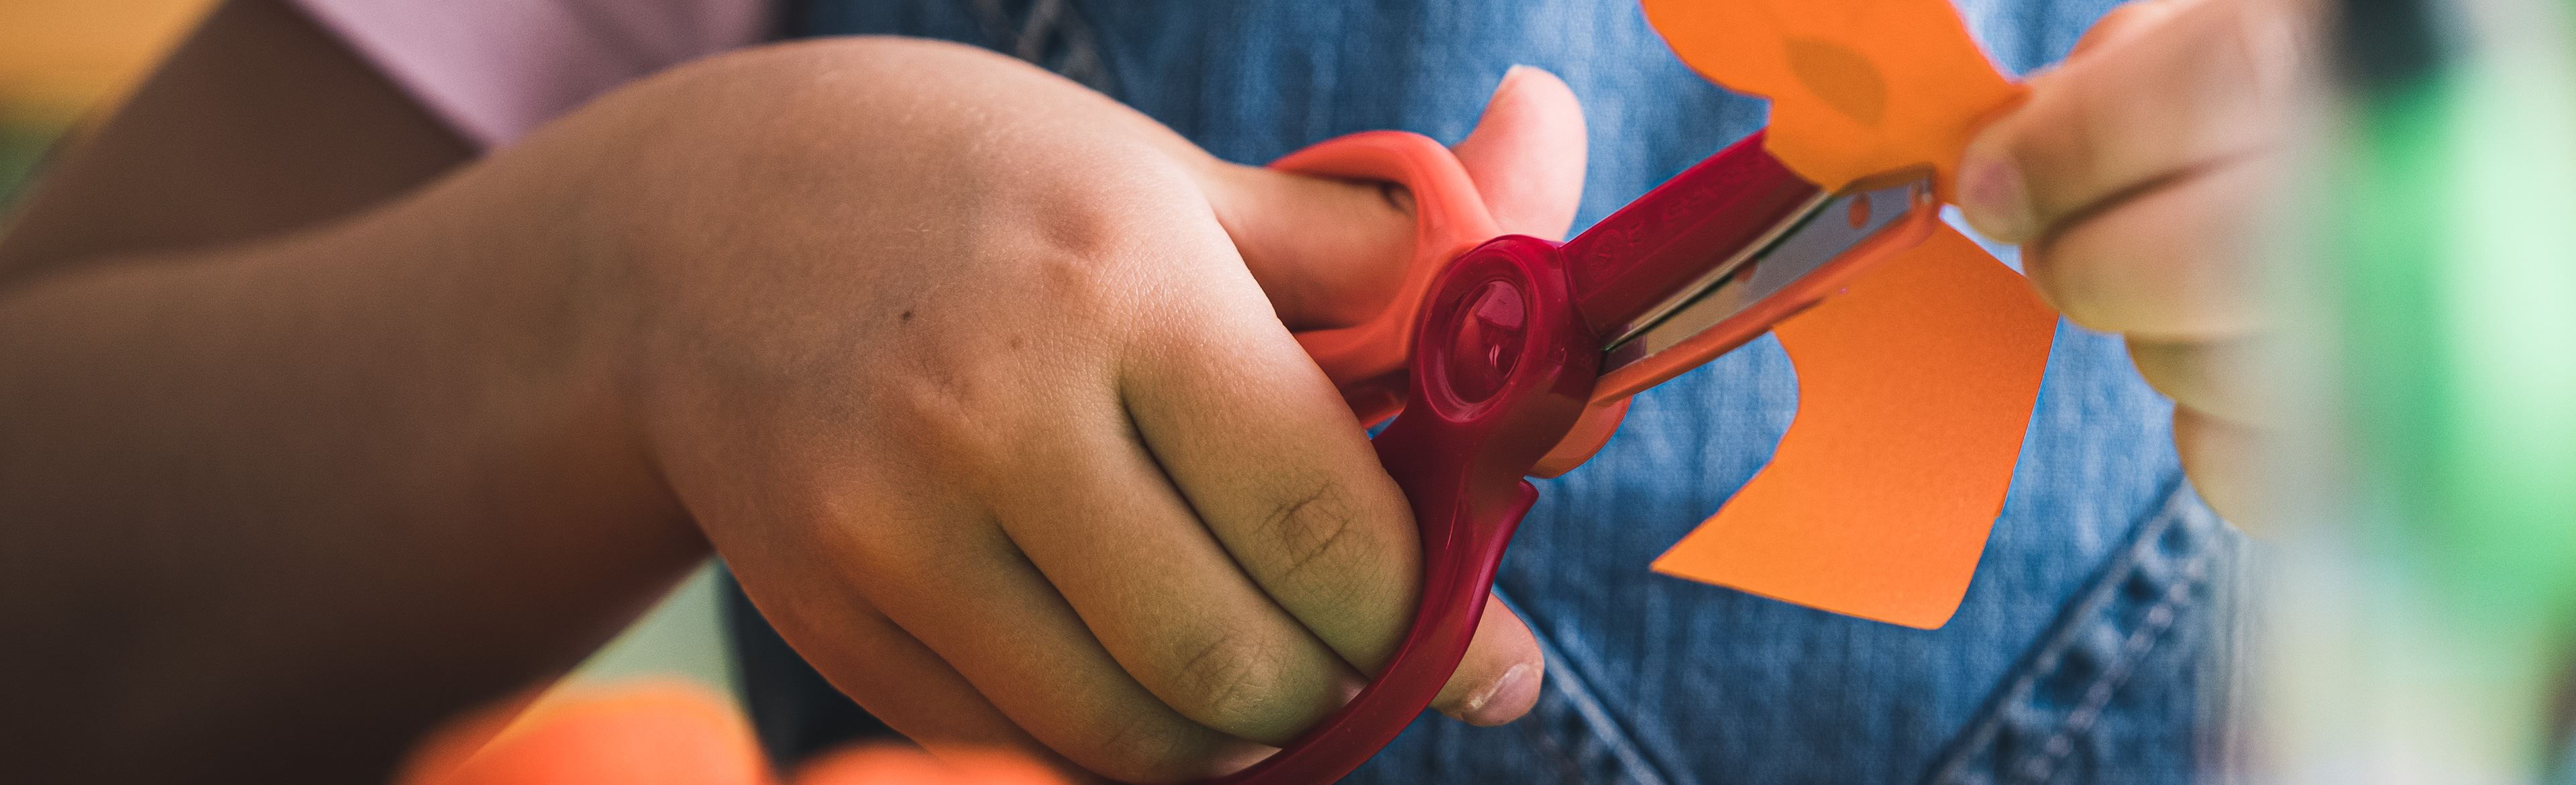 Fiskars 5 Kids Scissors - Blunt Tip - New SoftGrip (2 pattern & 4